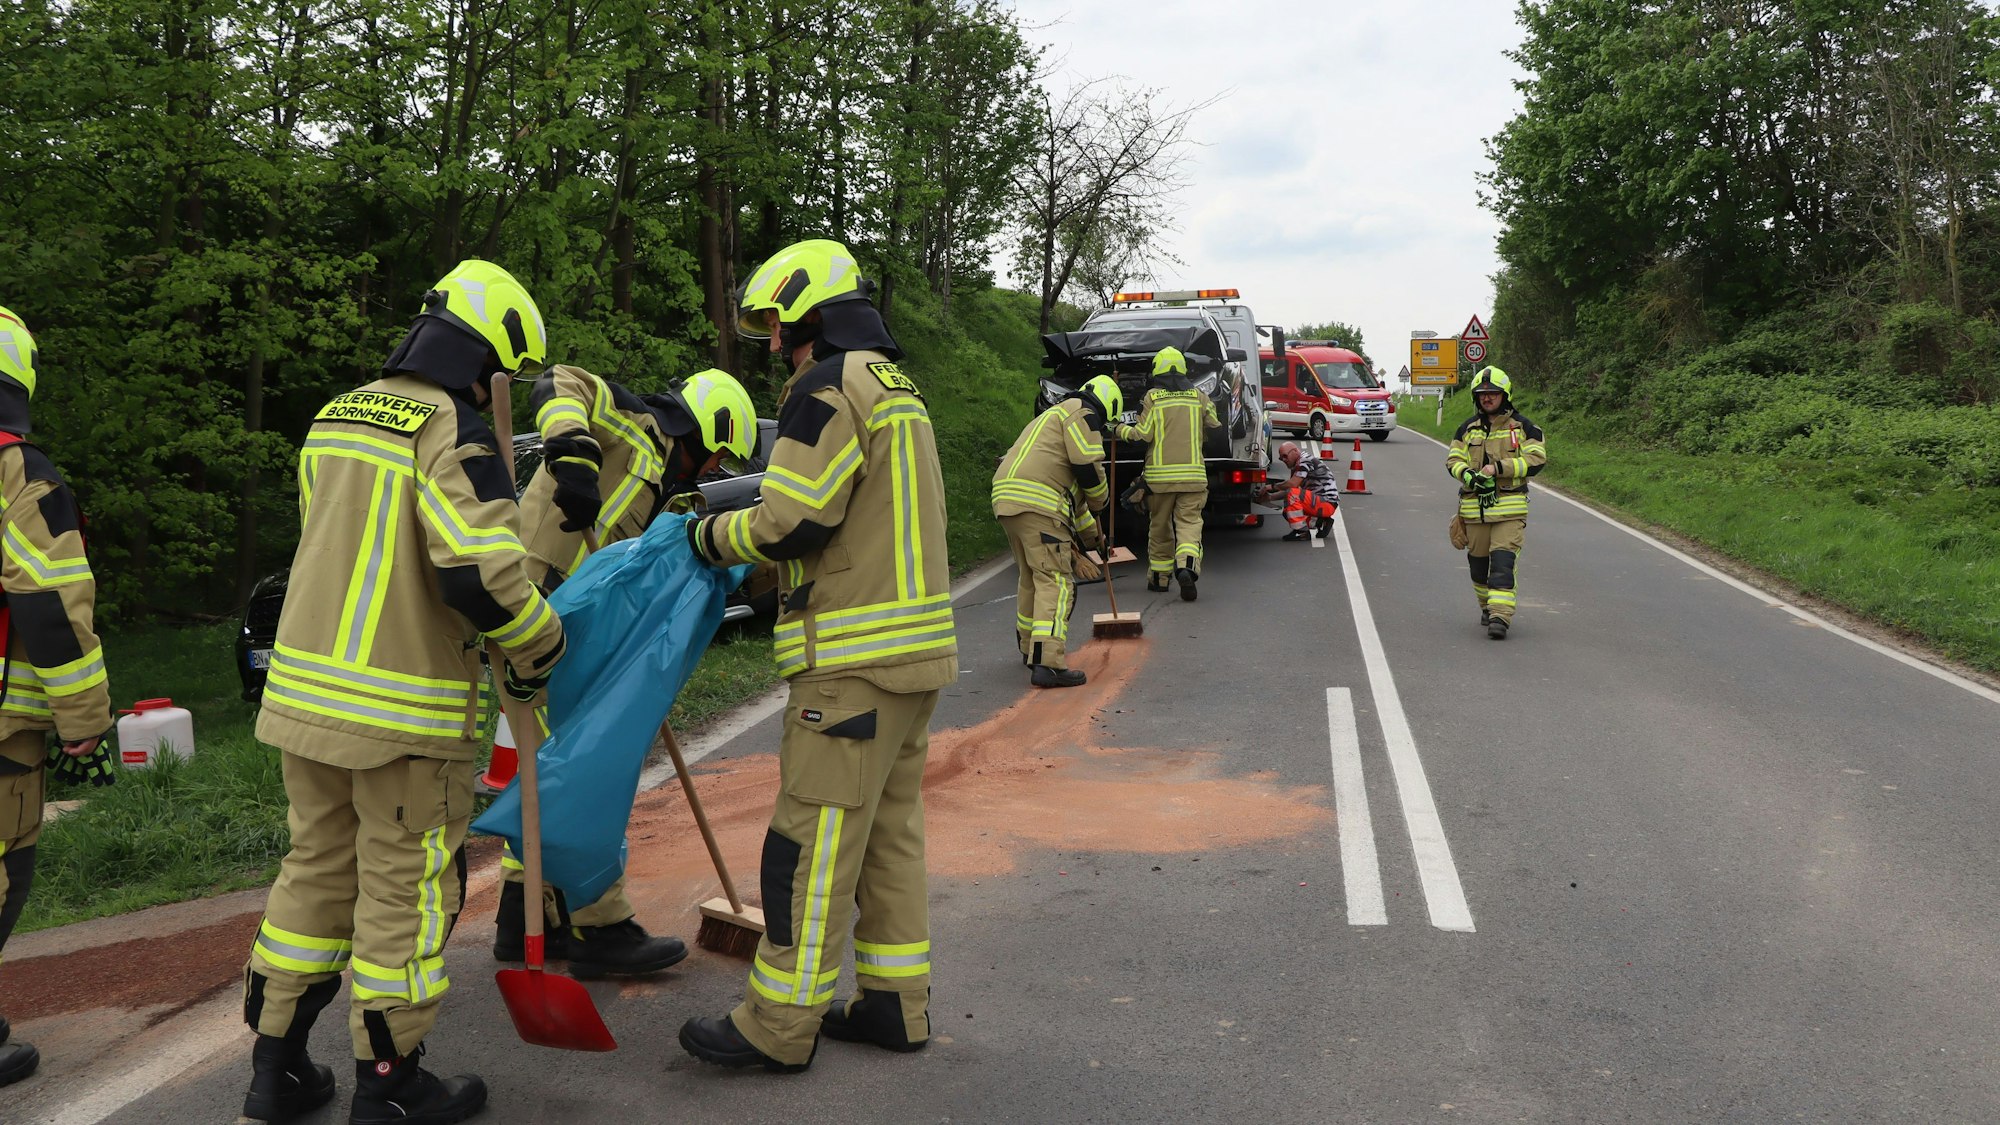 Feuerwehrleute der Löschgruppe Sechtem sicherten die Unfallstelle, sie unterstützten auch den Rettungsdienst und stellten am Einsatzort den Brandschutz sicher.